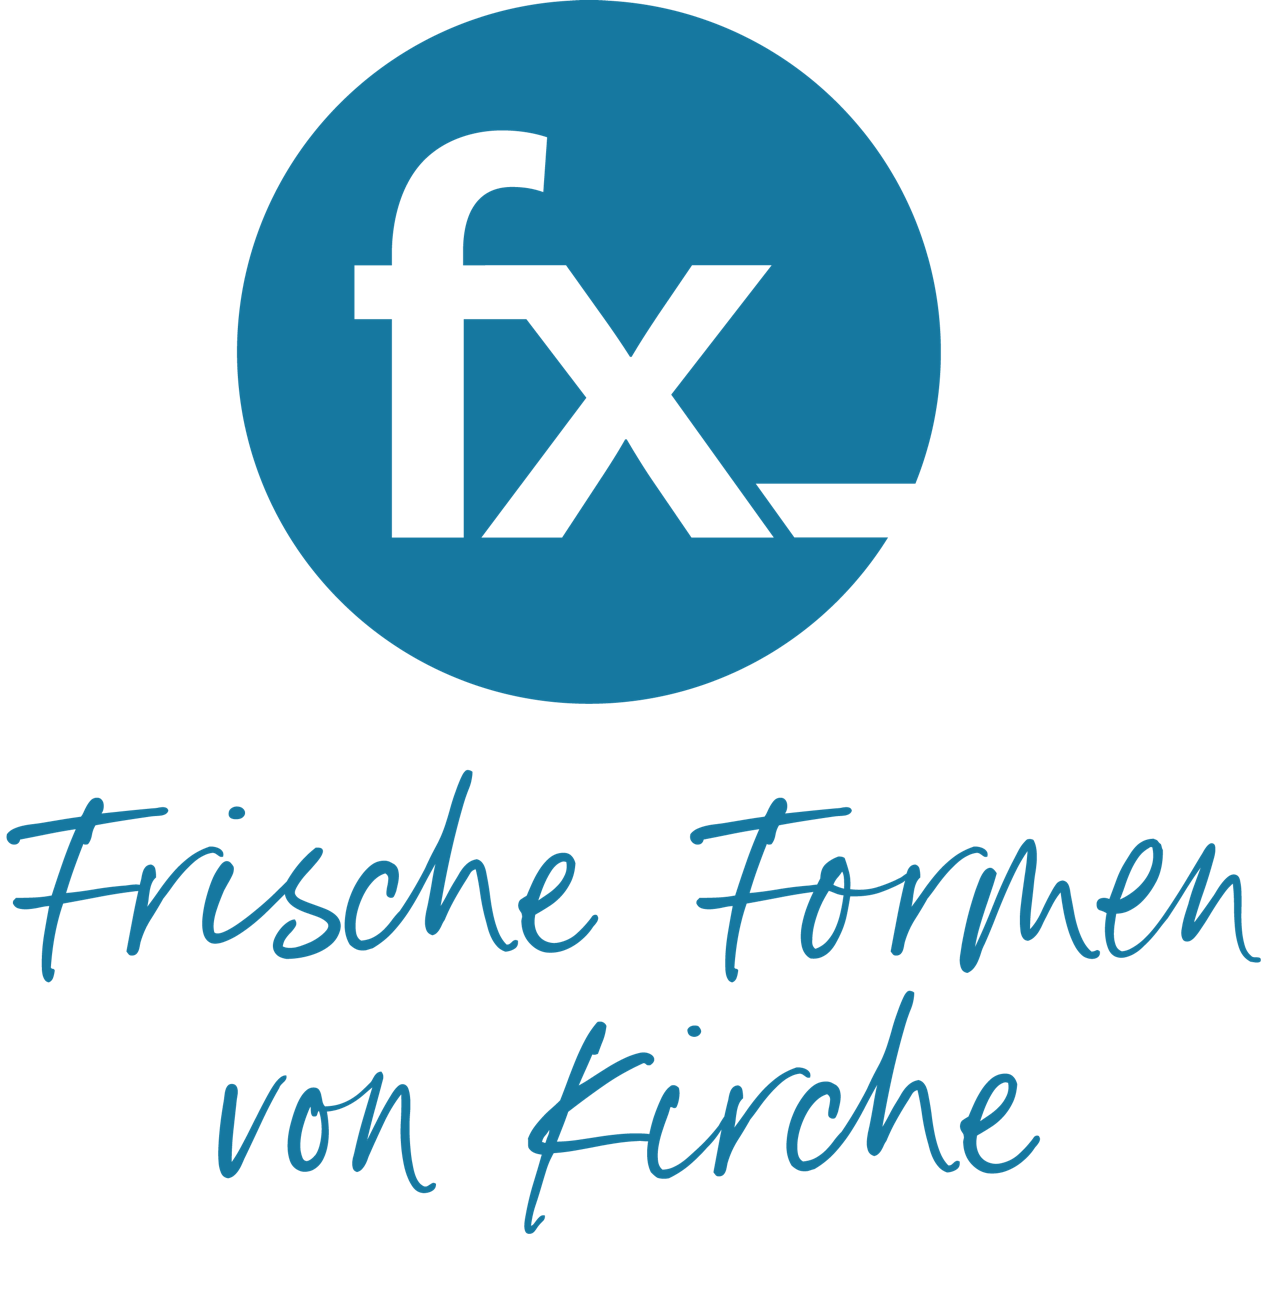 fx logo claim